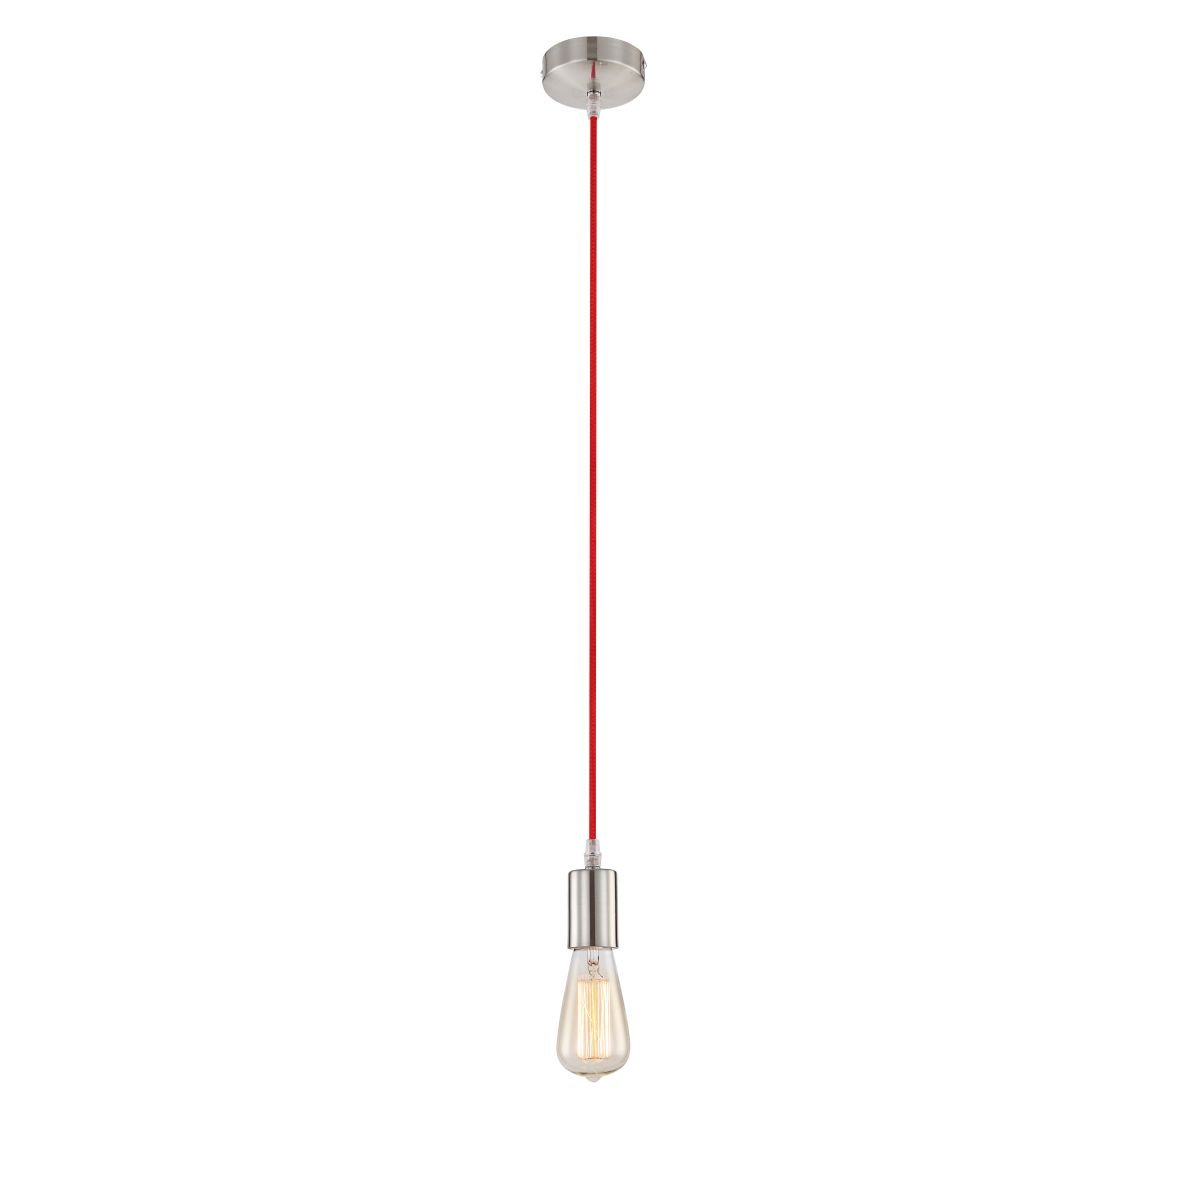 Светильник подвесной Globo A13, матовый никель, E27, 1x60W A13